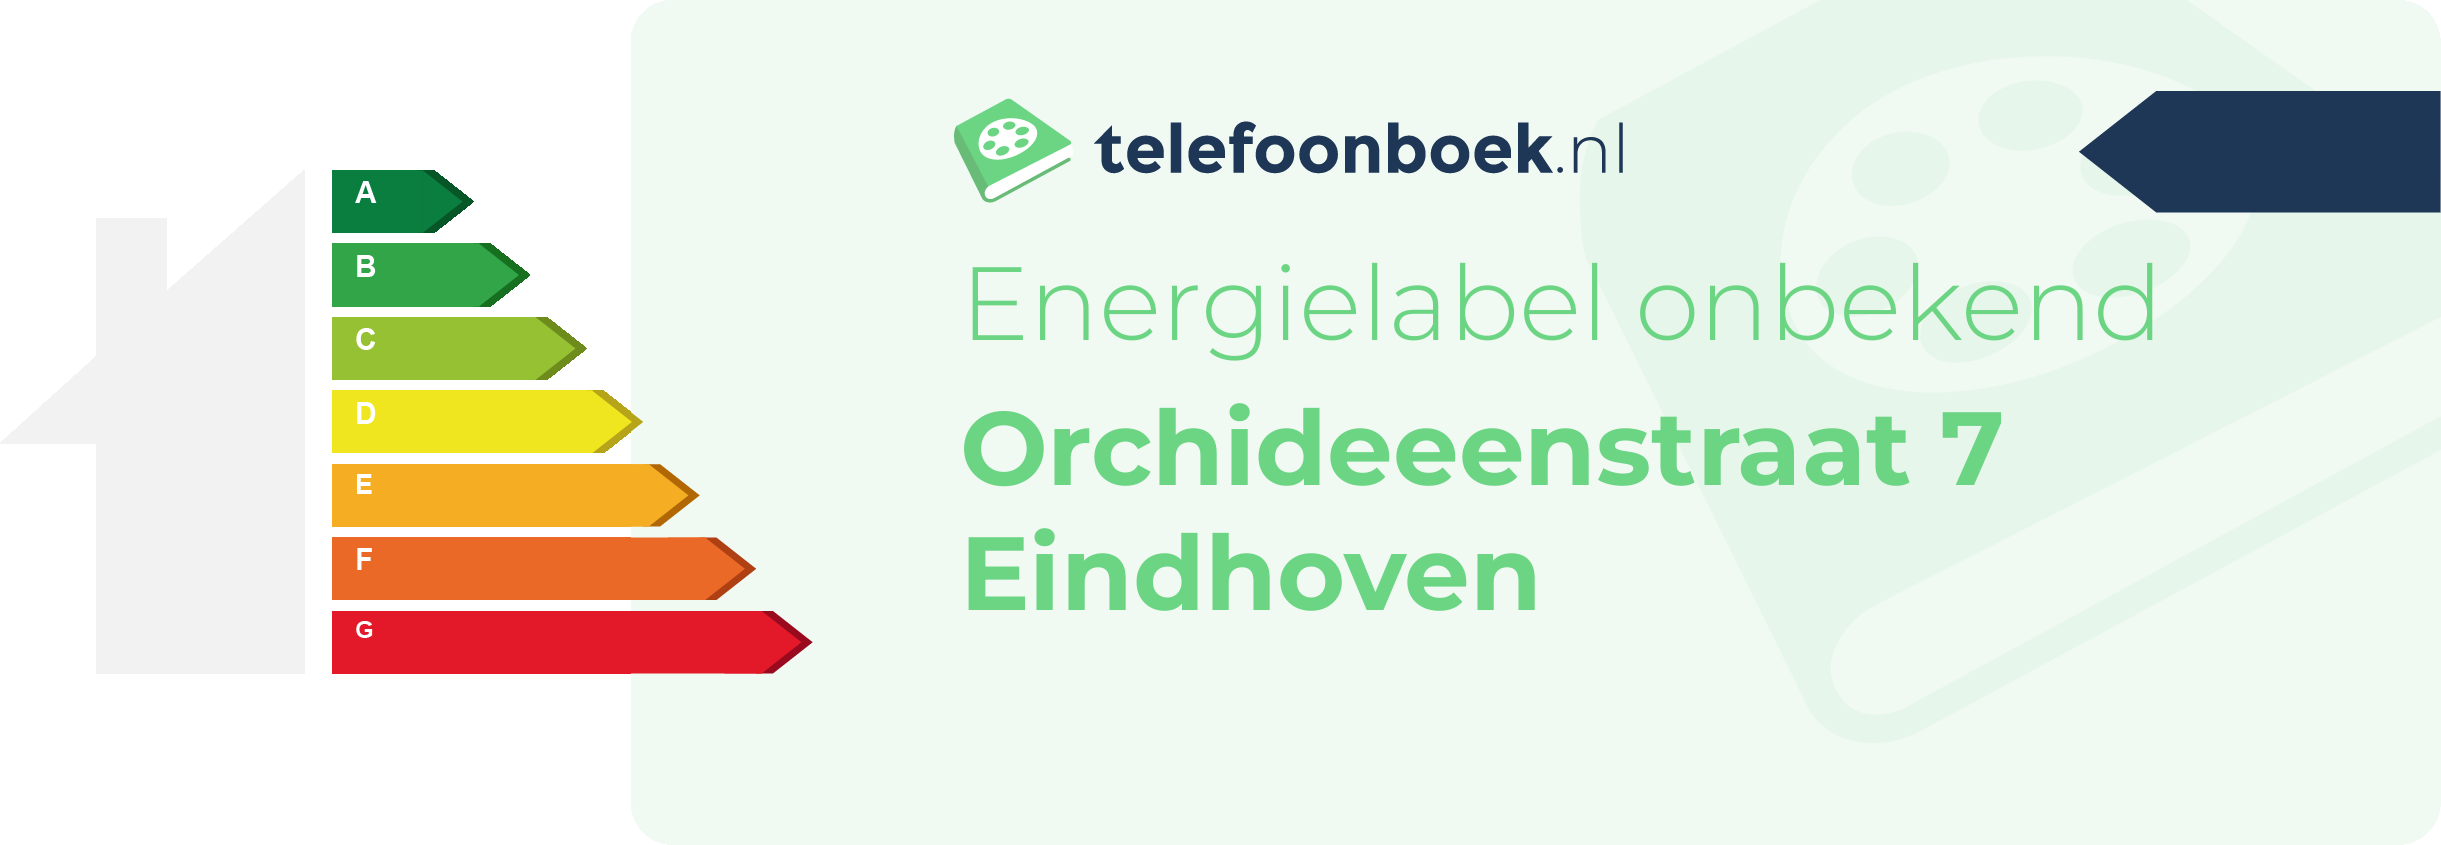 Energielabel Orchideeenstraat 7 Eindhoven